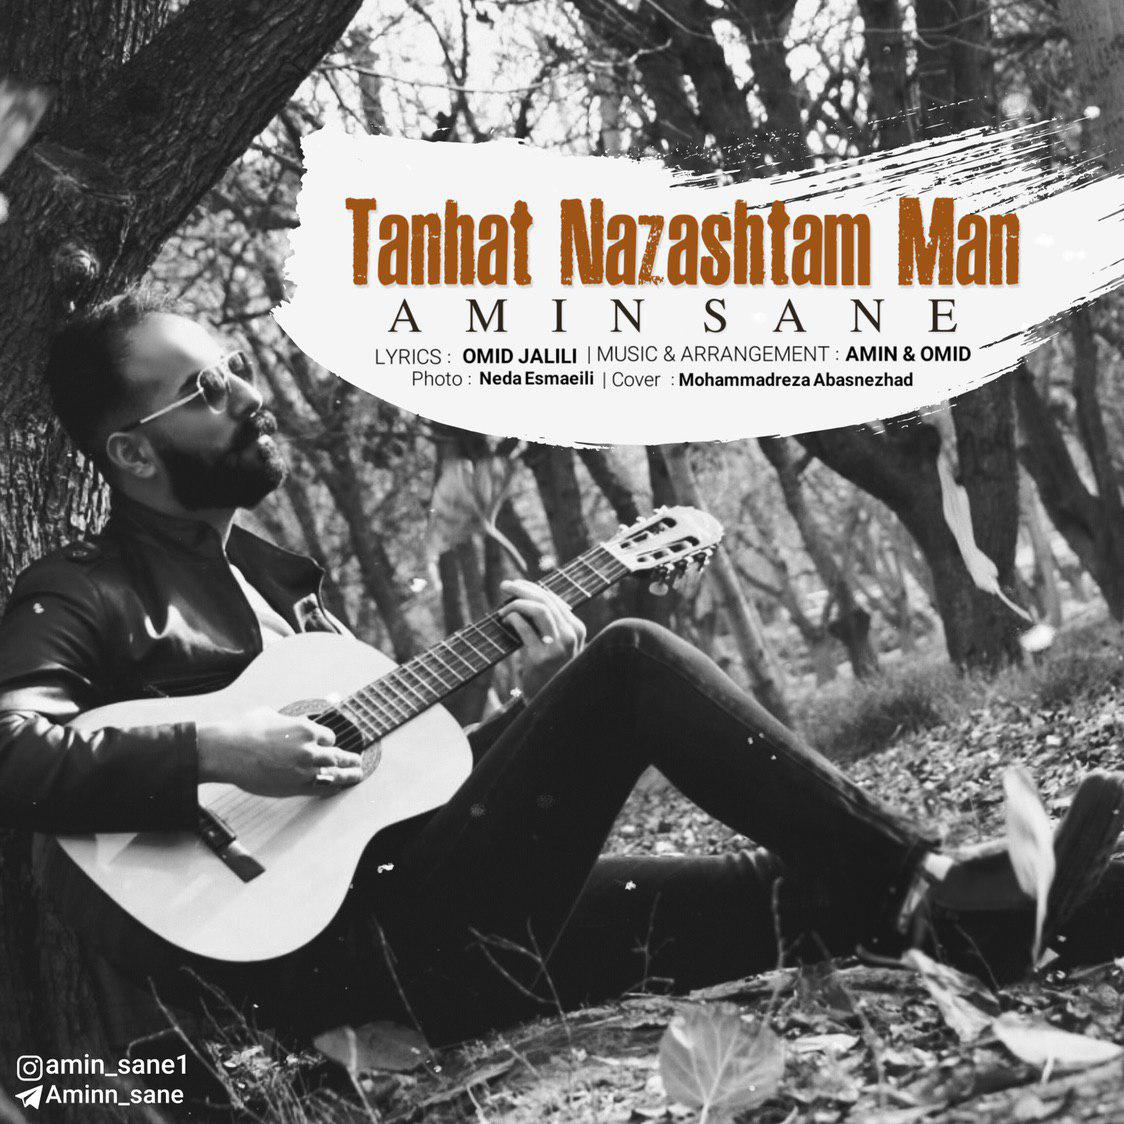  دانلود آهنگ جدید امین صانع - تنهات نذاشتم من | Download New Music By Amin Sane - Tanhat Nazashtam Man